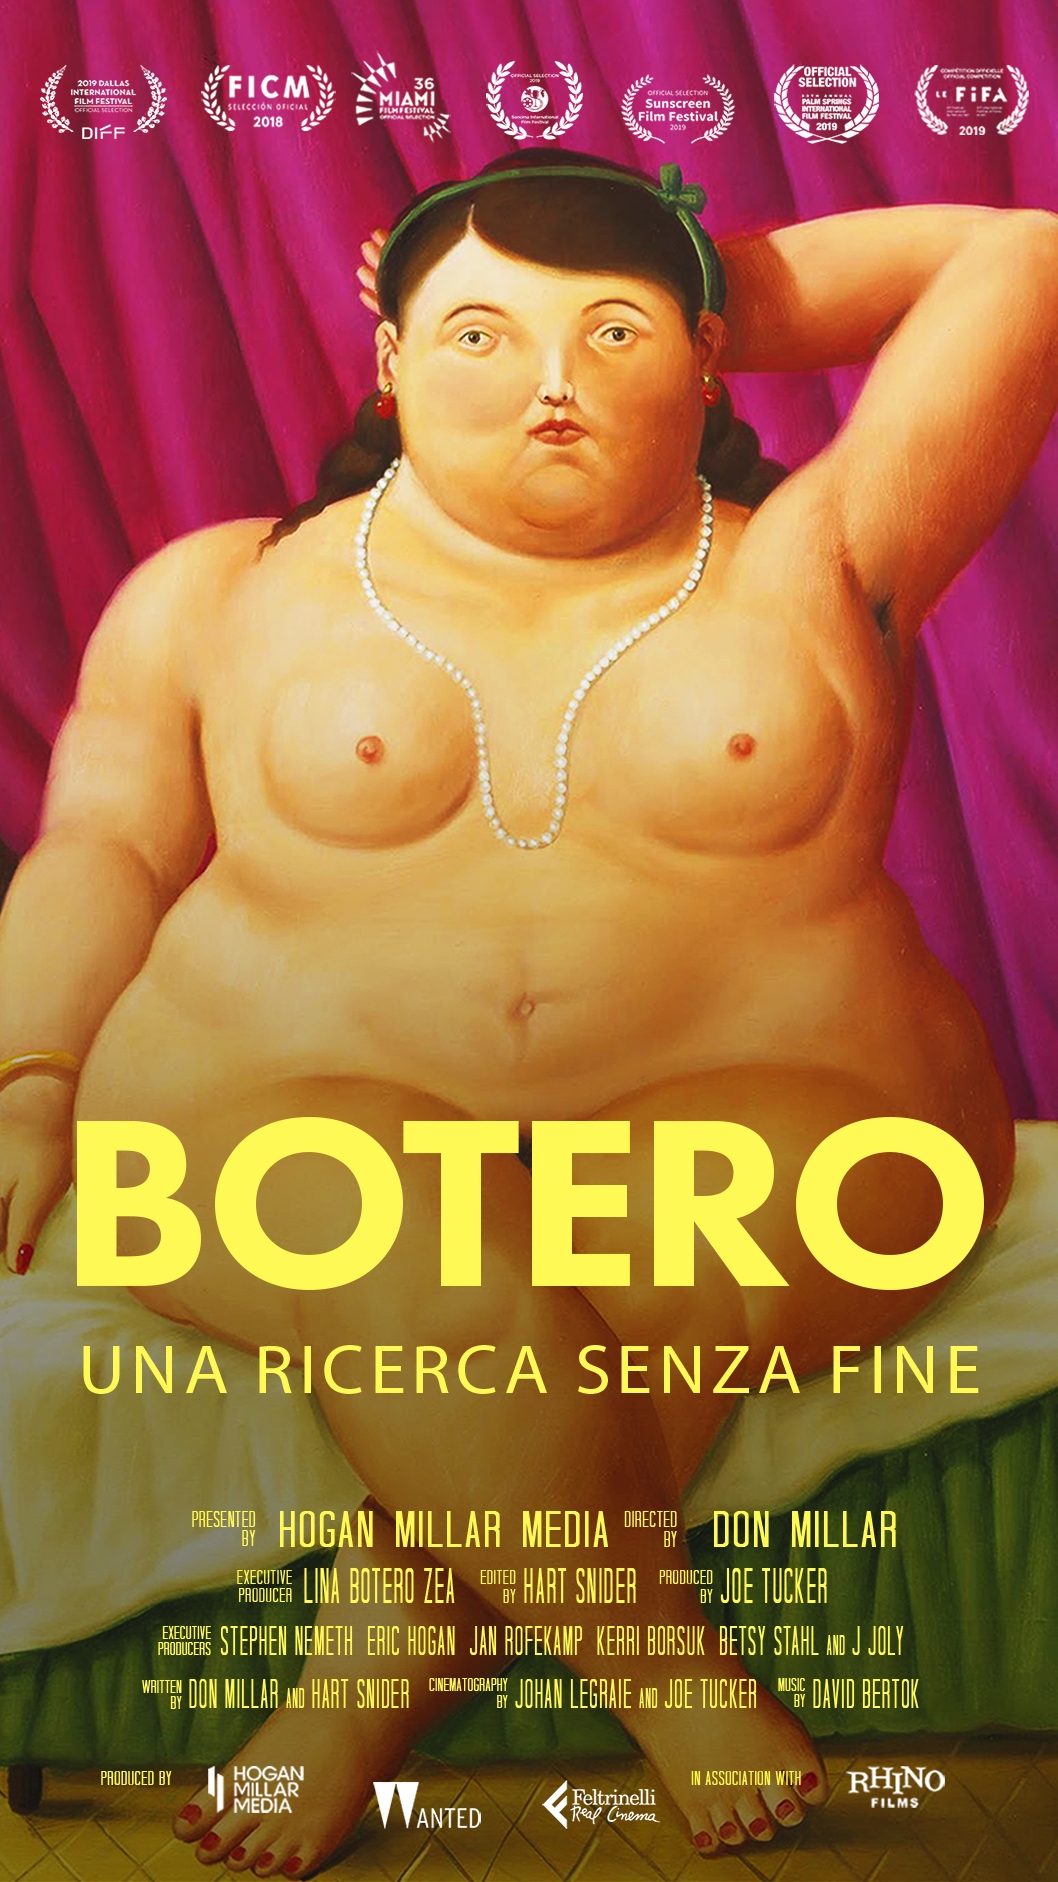 Al momento stai visualizzando “Botero – Una ricerca senza fine” al cinema Centrale di Udine dal 3 al 5 febbraio